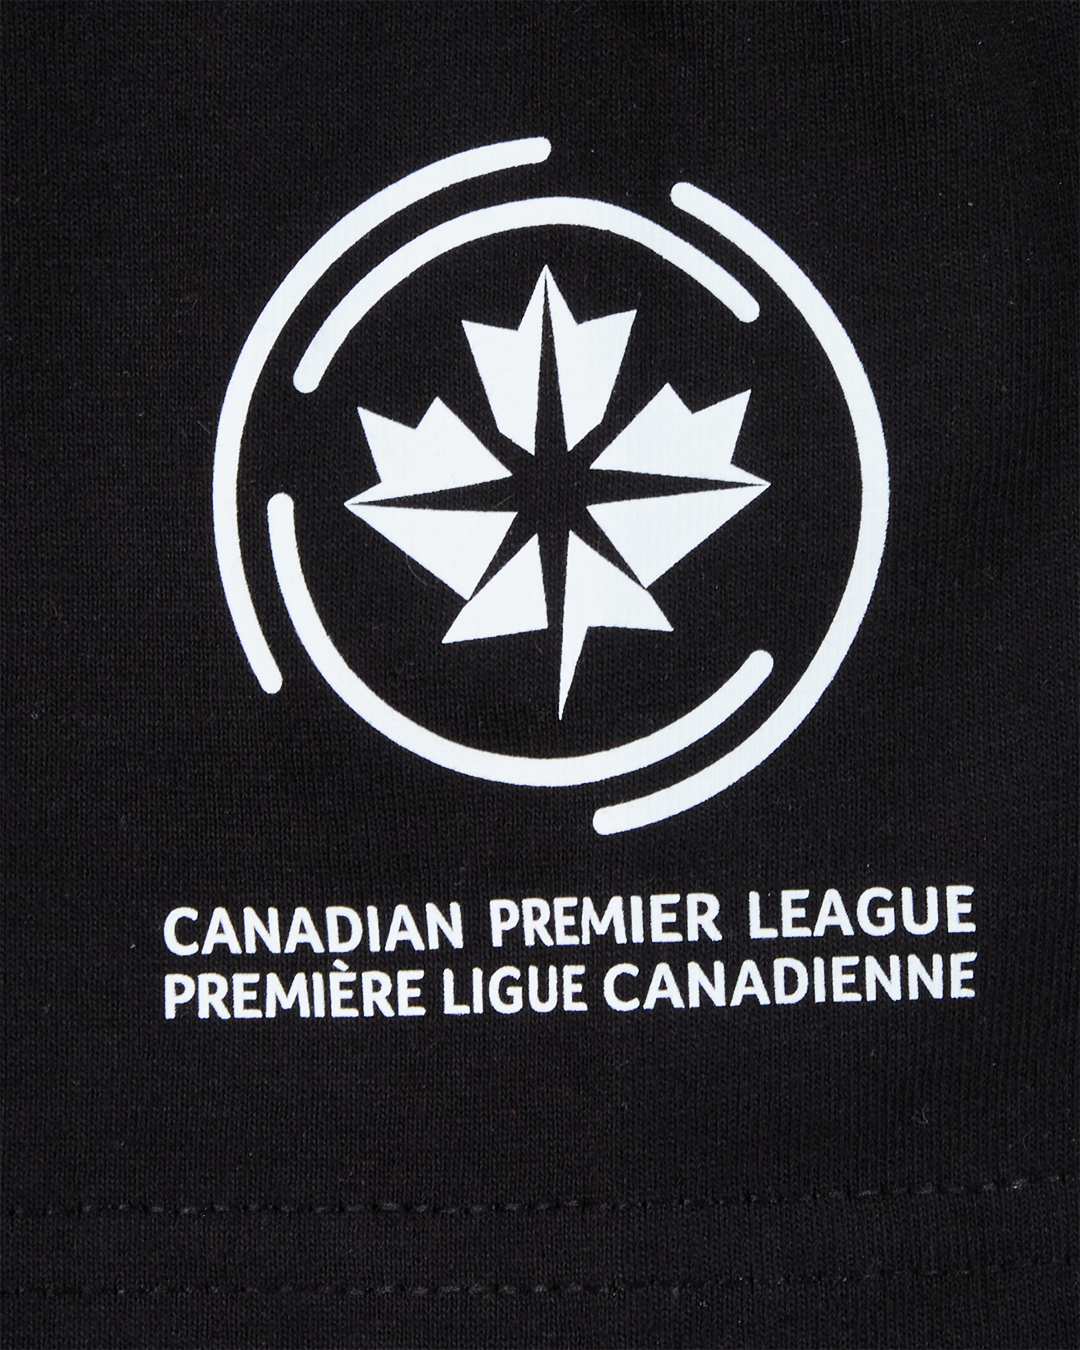 Canadian Premier League x Ringleaders "Même Pas Peur" S/S T-Shirt (Limited Edition - Ottawa)